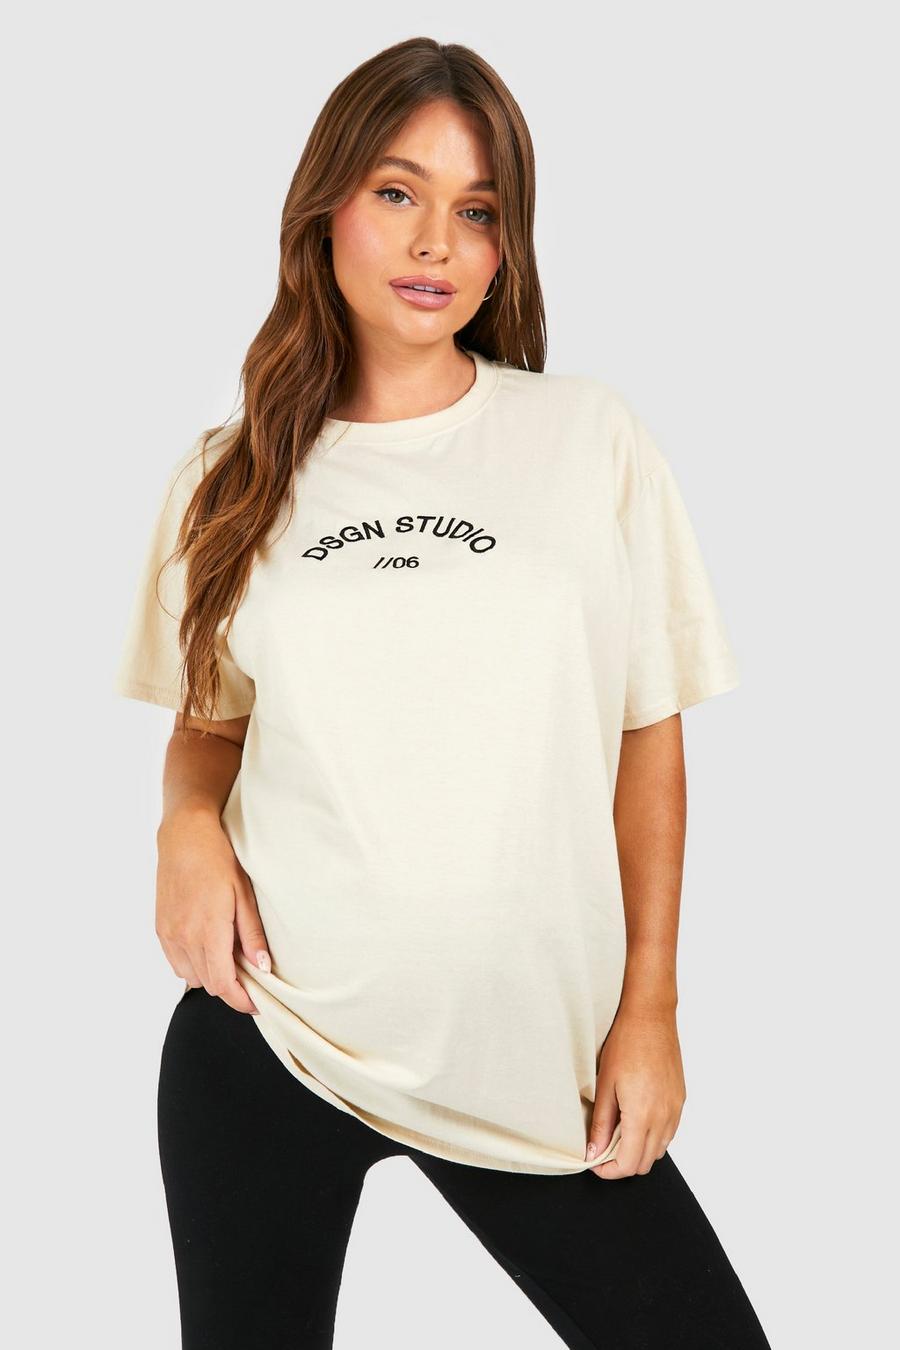 Umstandsmode T-Shirt mit Dsgn Studio Stickerei, Sand beige